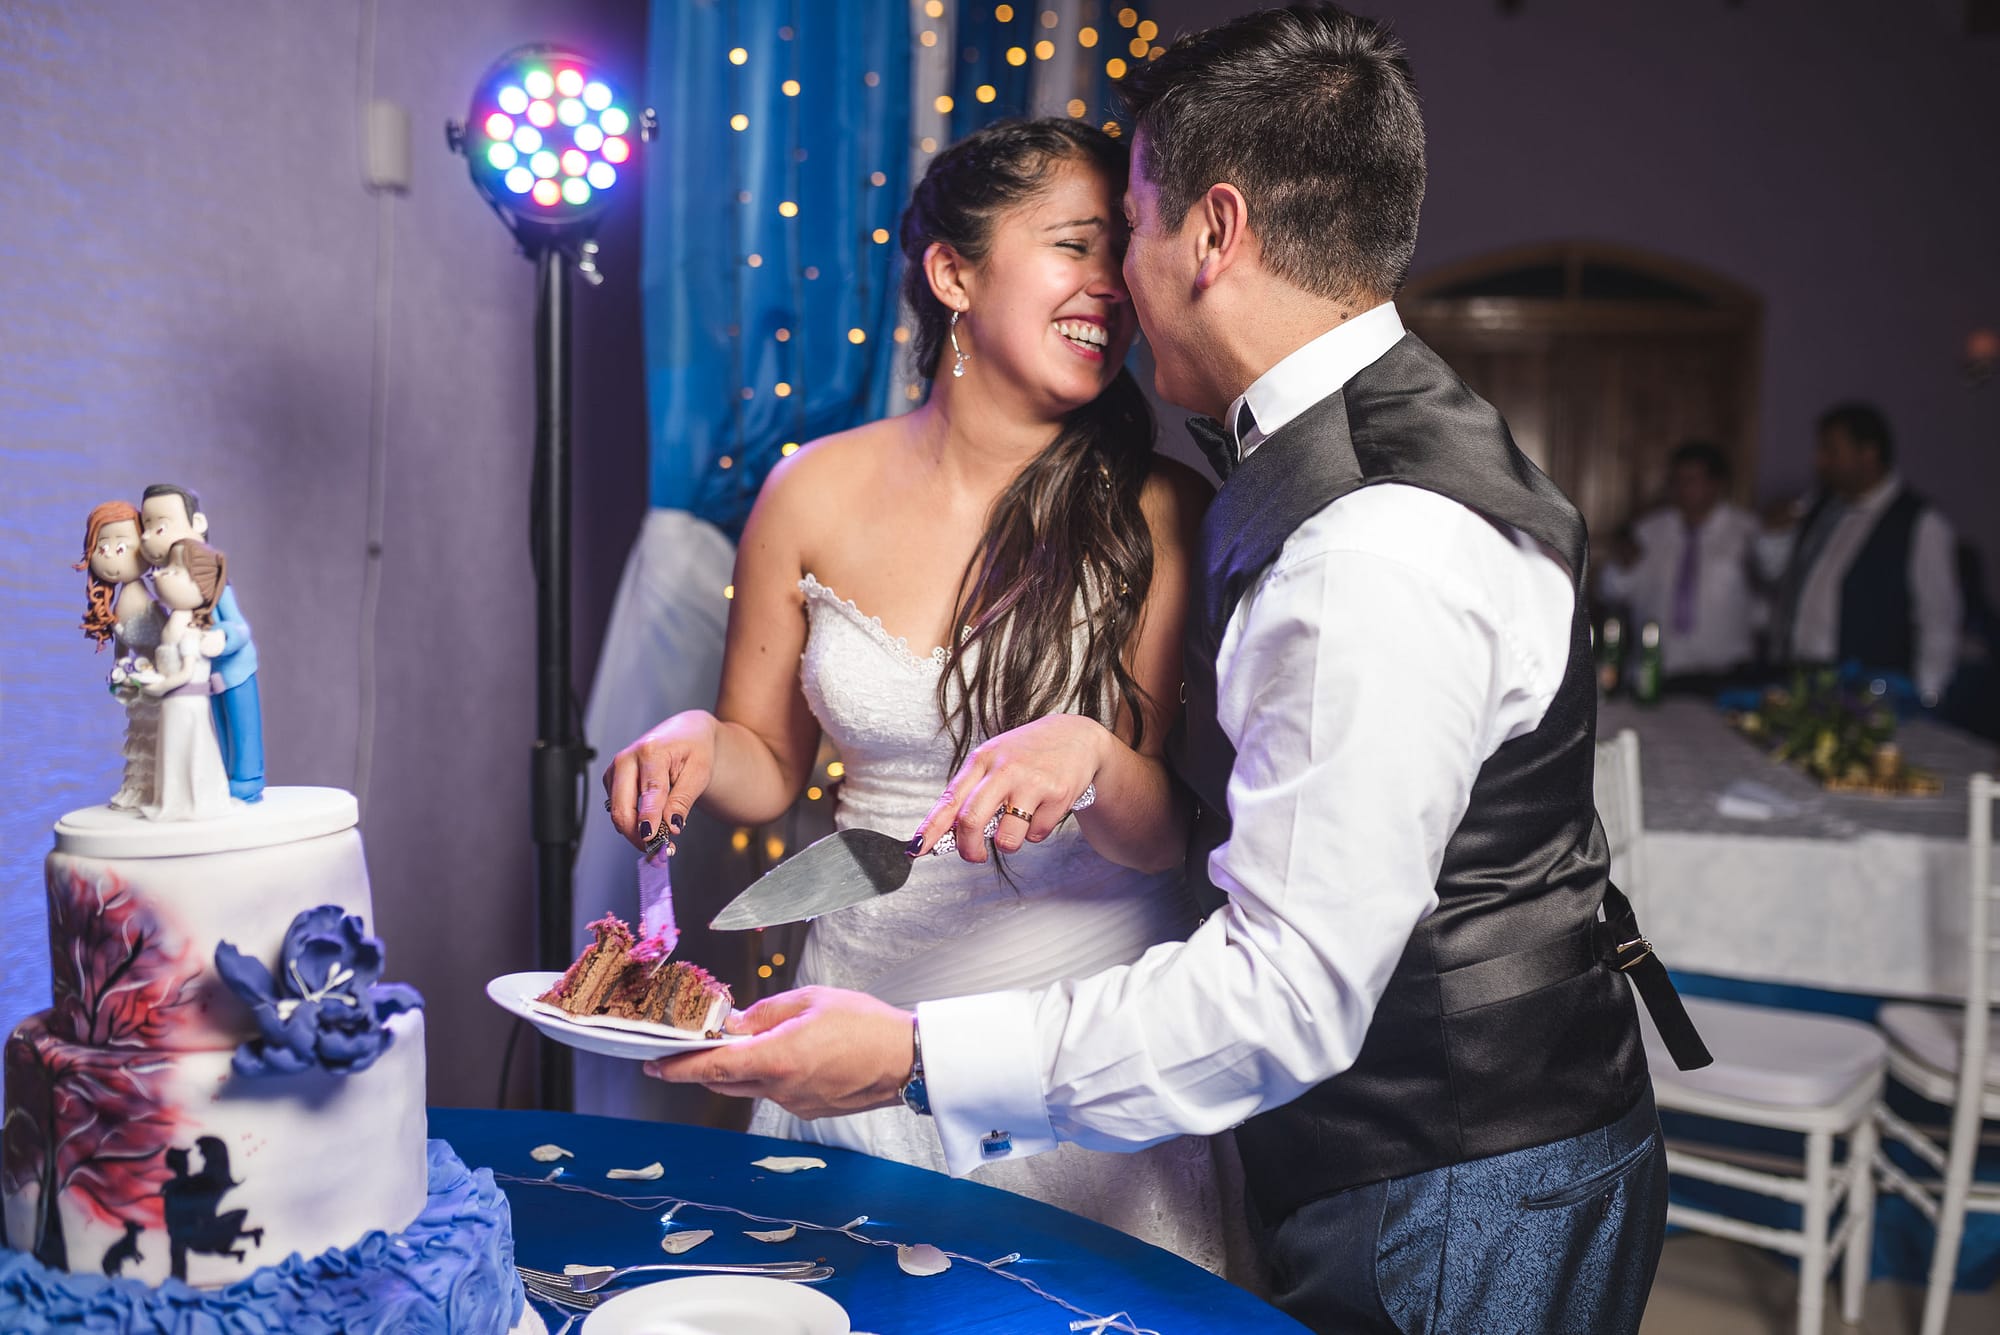 Matrimonio-centro de eventos-oliveto-santiago-fotógrafo de matrimonios-fiesta-torta novios